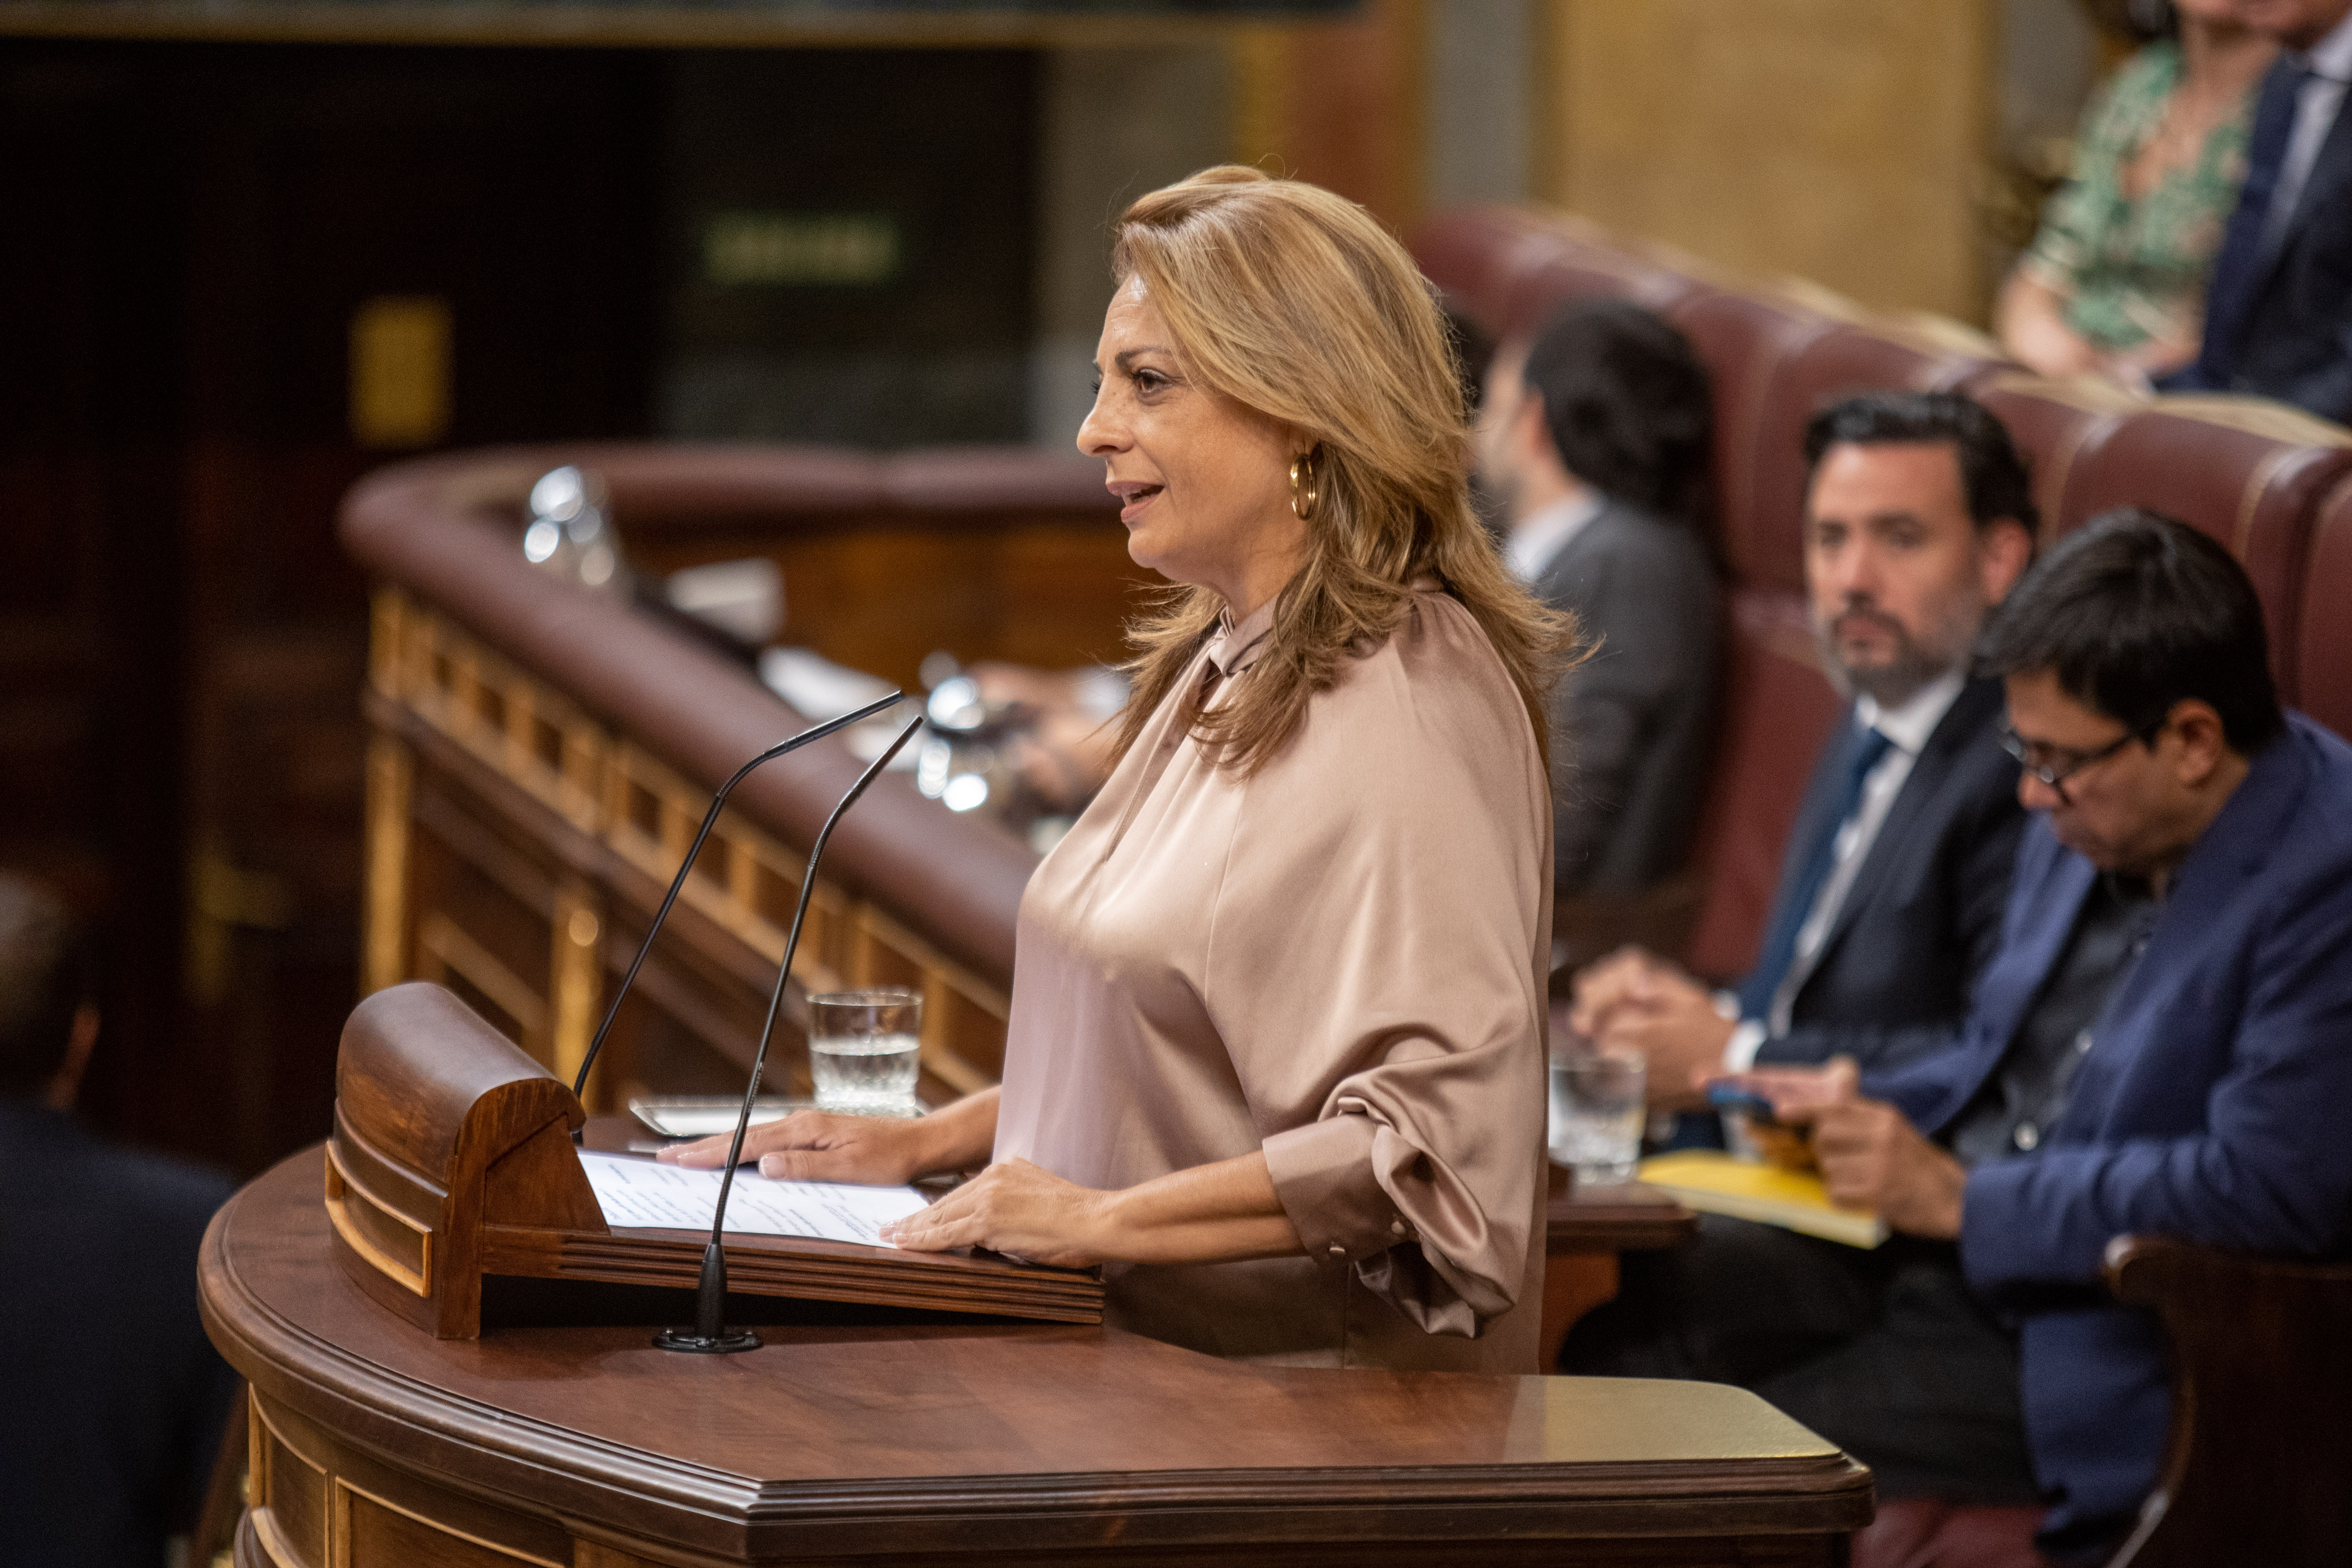 La diputada de Coalición Canaria, integrada en el Grupo Mixto, Cristina Valido, toma la palabra en el hemiciclo.